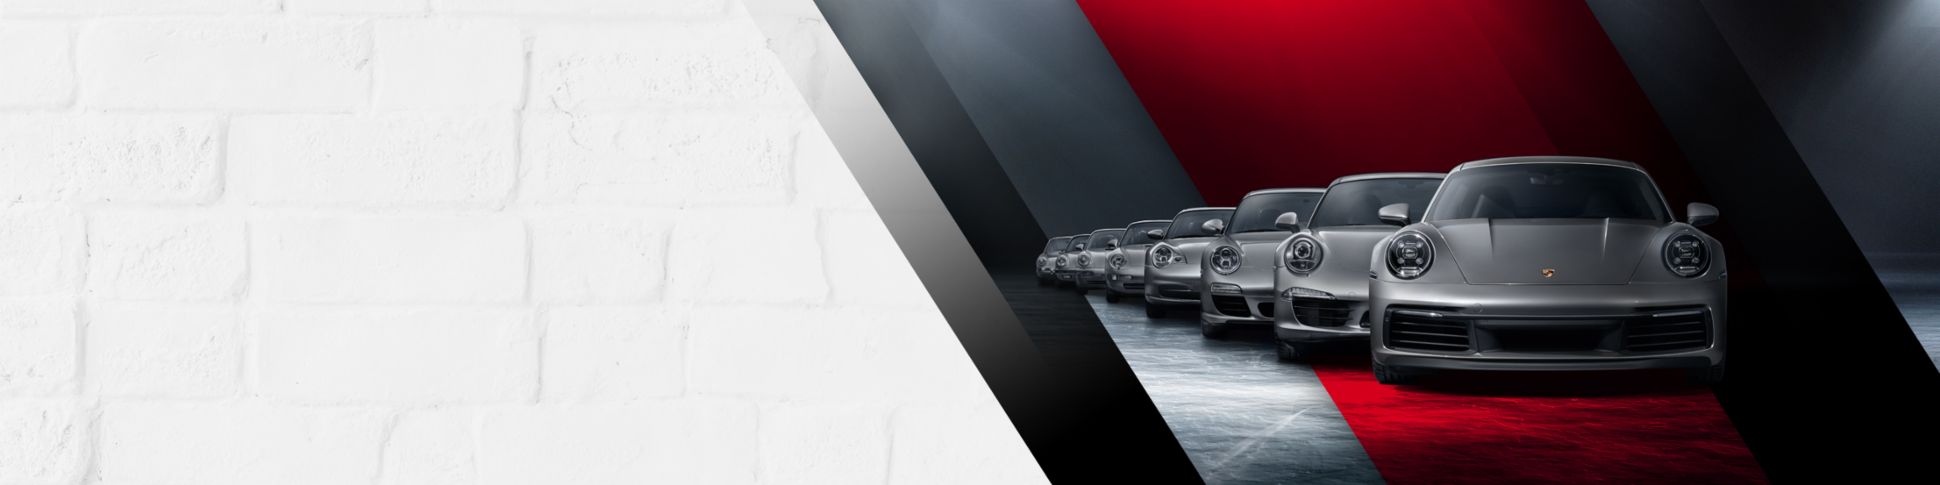 Los personajes de tamaño real volverán a estar juntos en esta celebración  exclusiva del automovilismo. - Porsche Newsroom LAT-AM